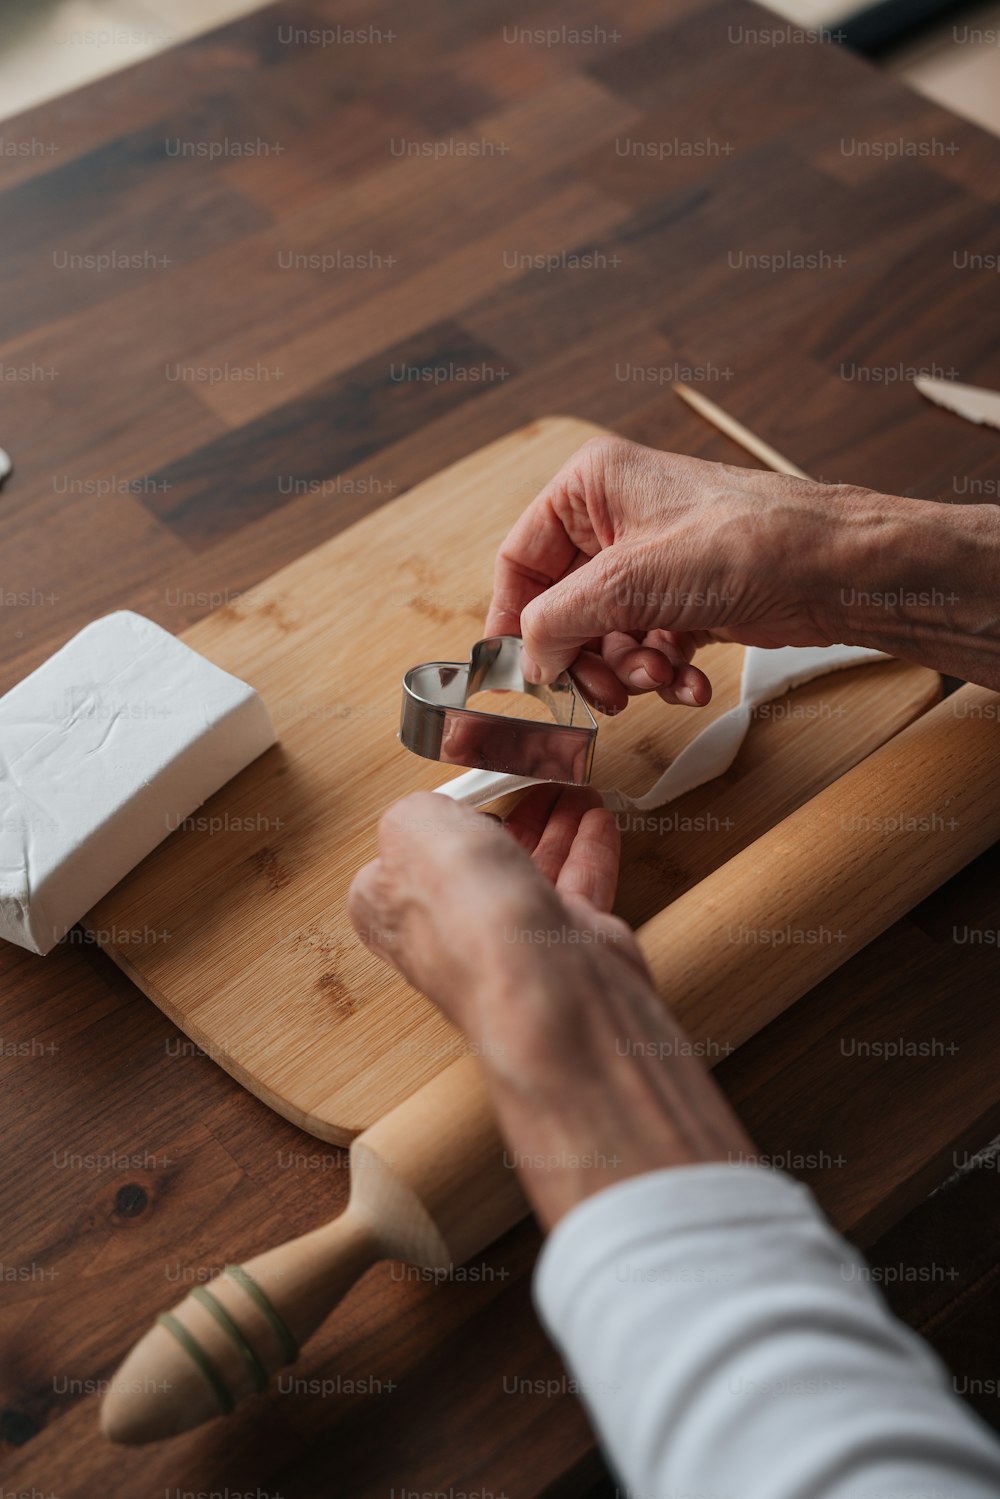 Una persona cortando un trozo de madera con un par de tijeras